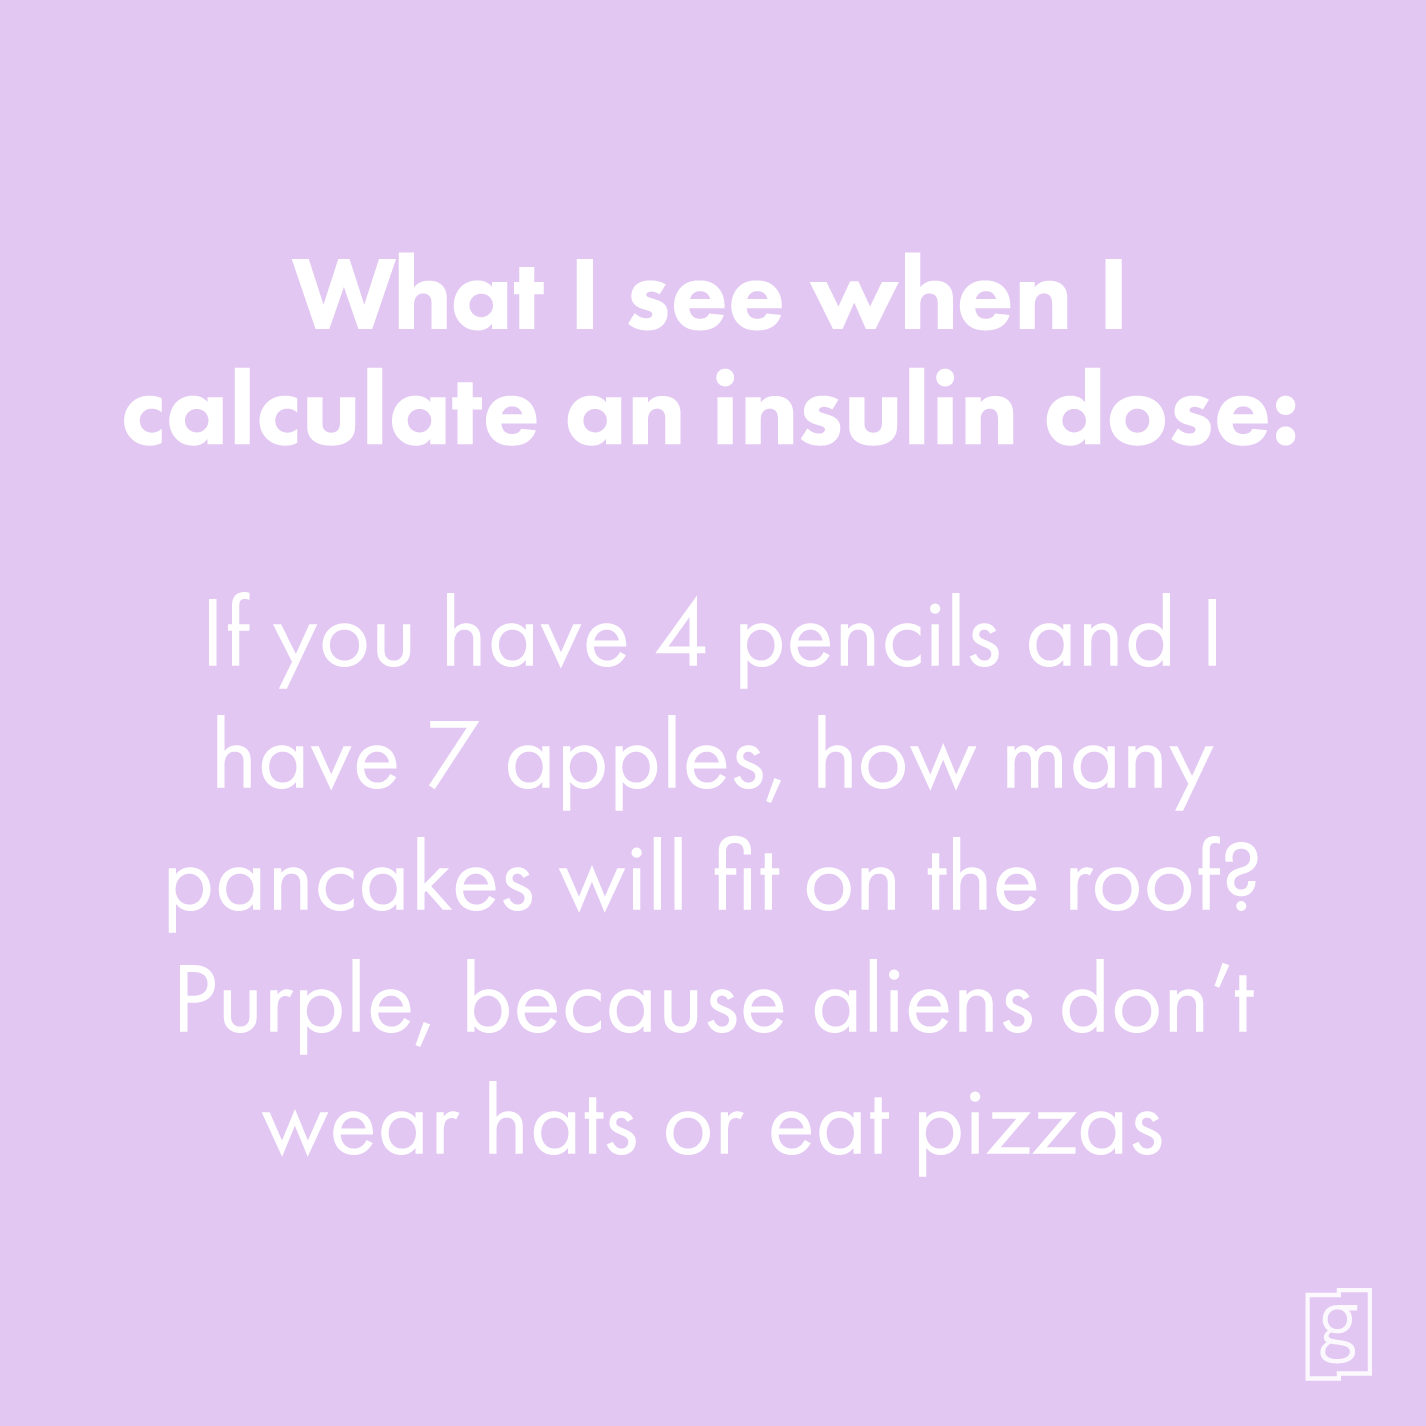 Calculating my insulin dose